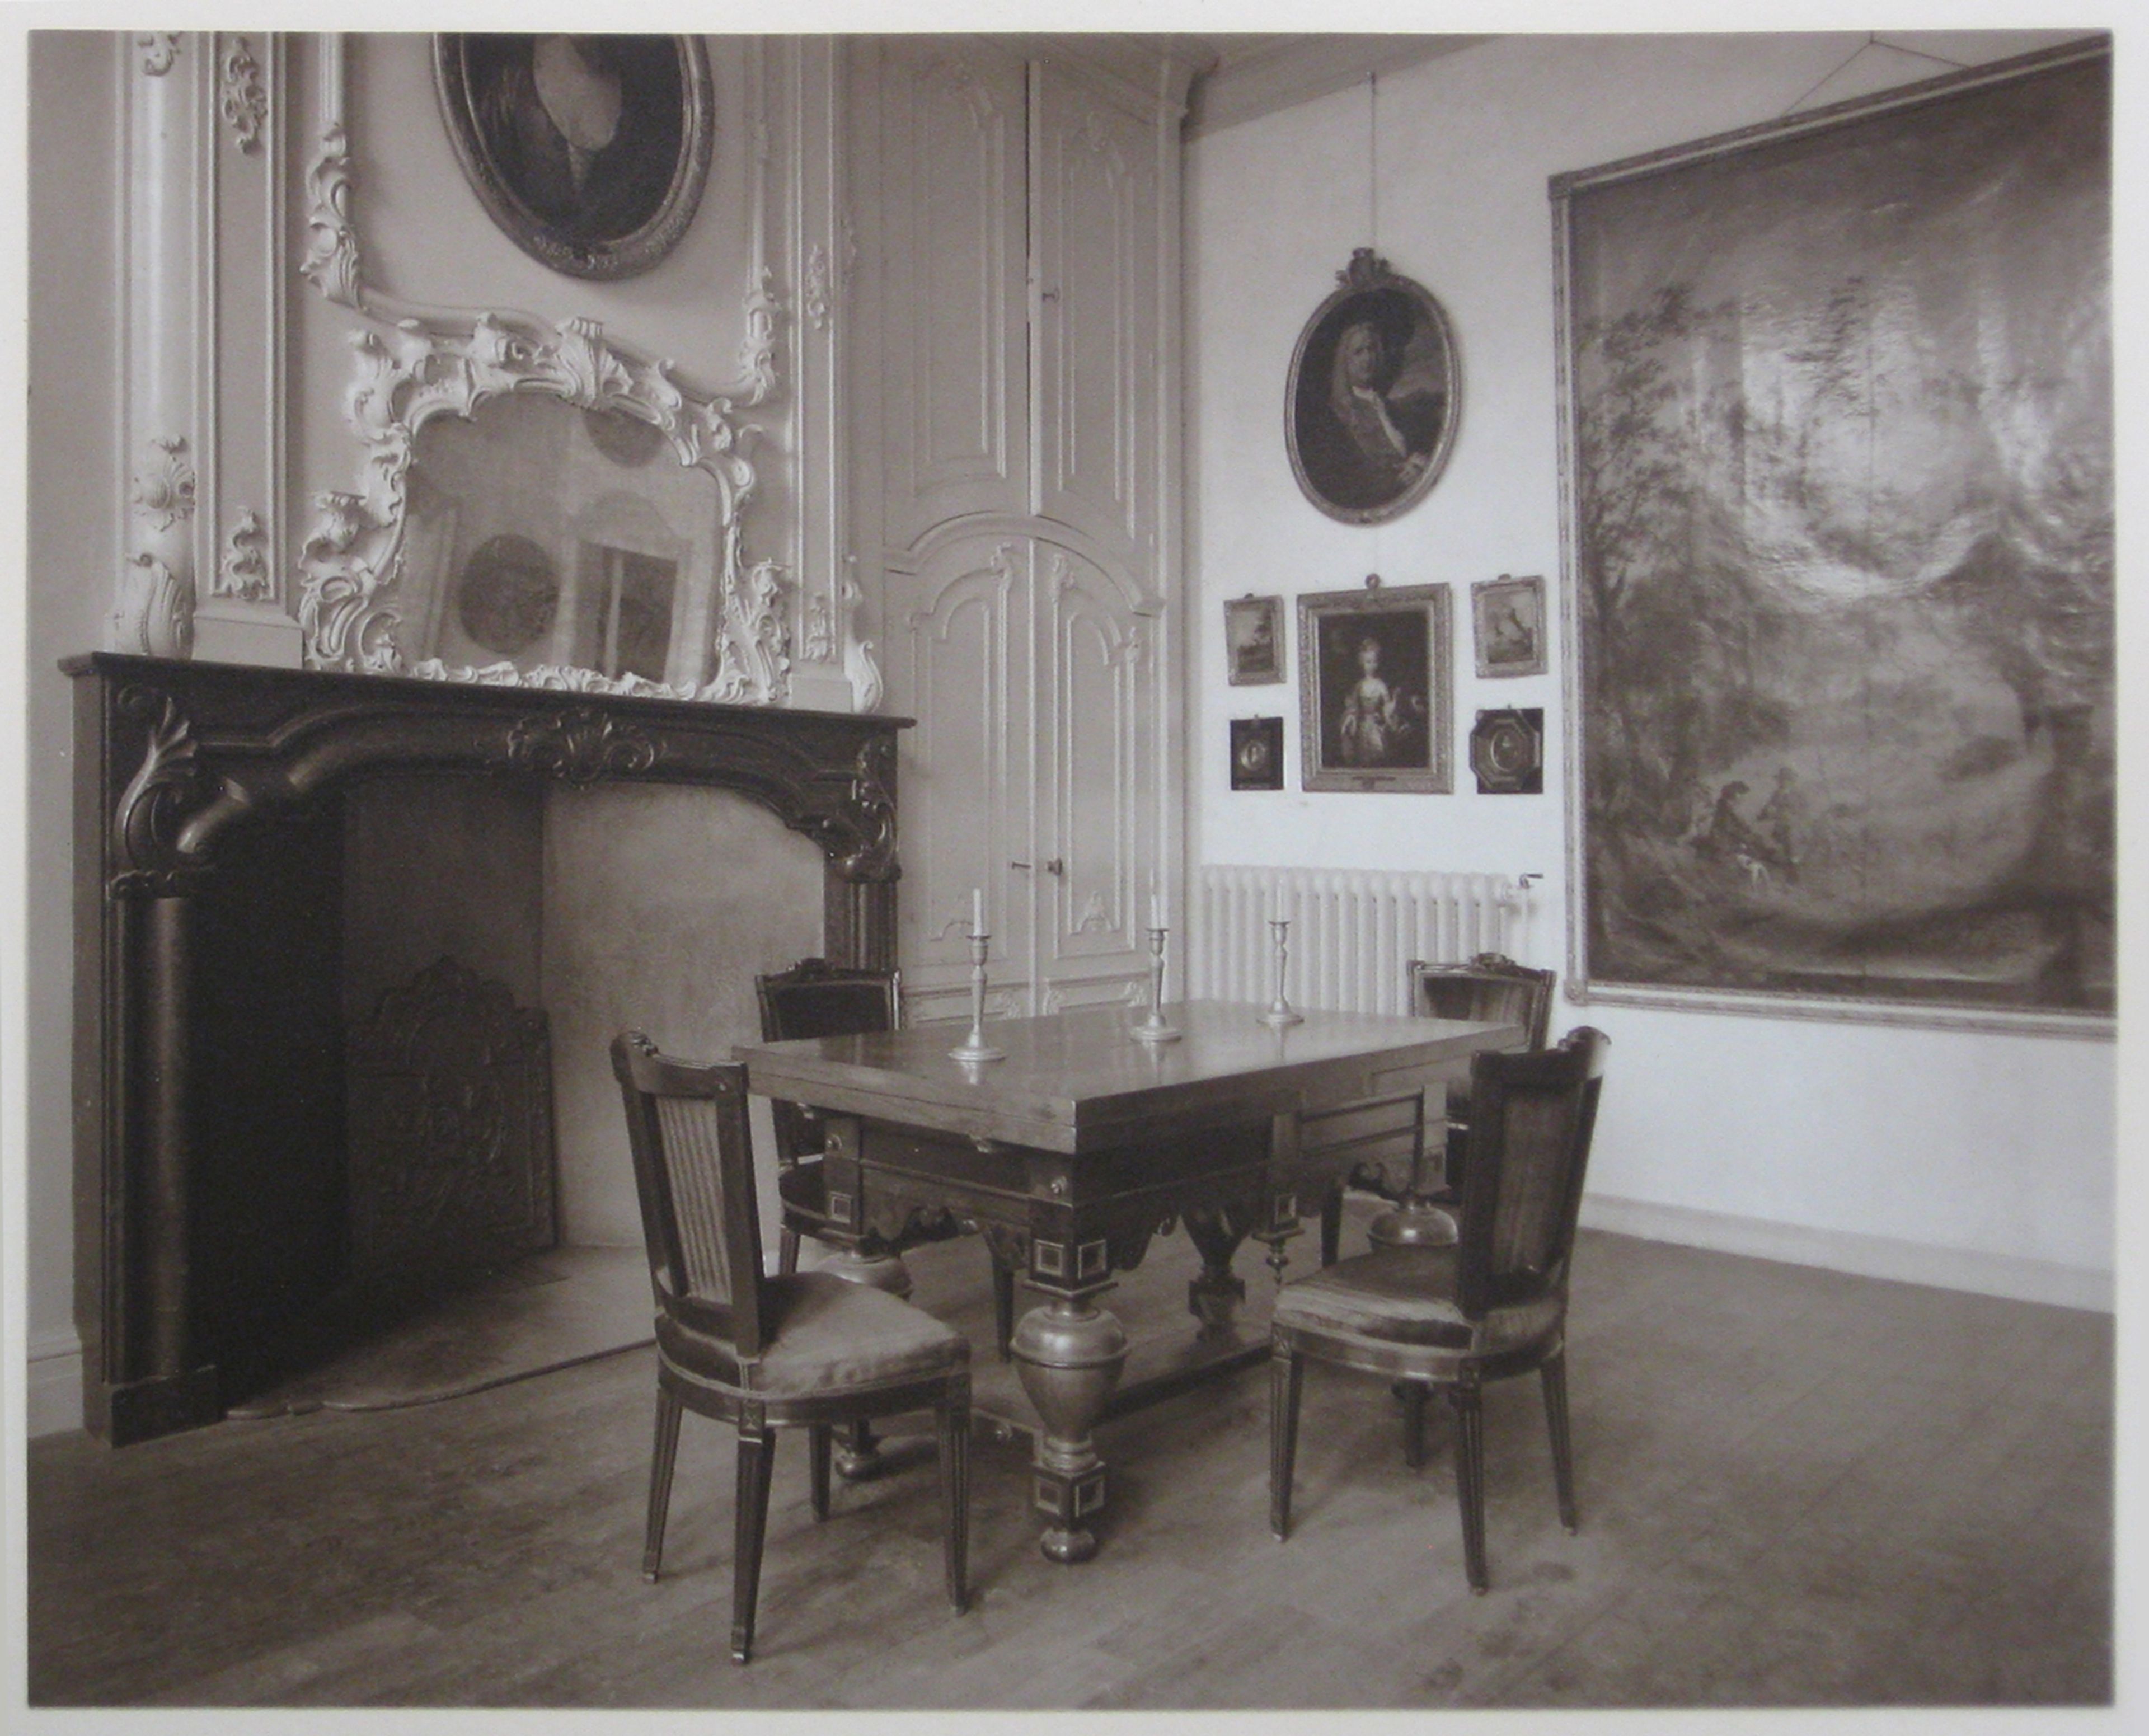 Regentenkamer ca. 1913 in het Frans Hals Museum, foto Noord Hollands Archief.